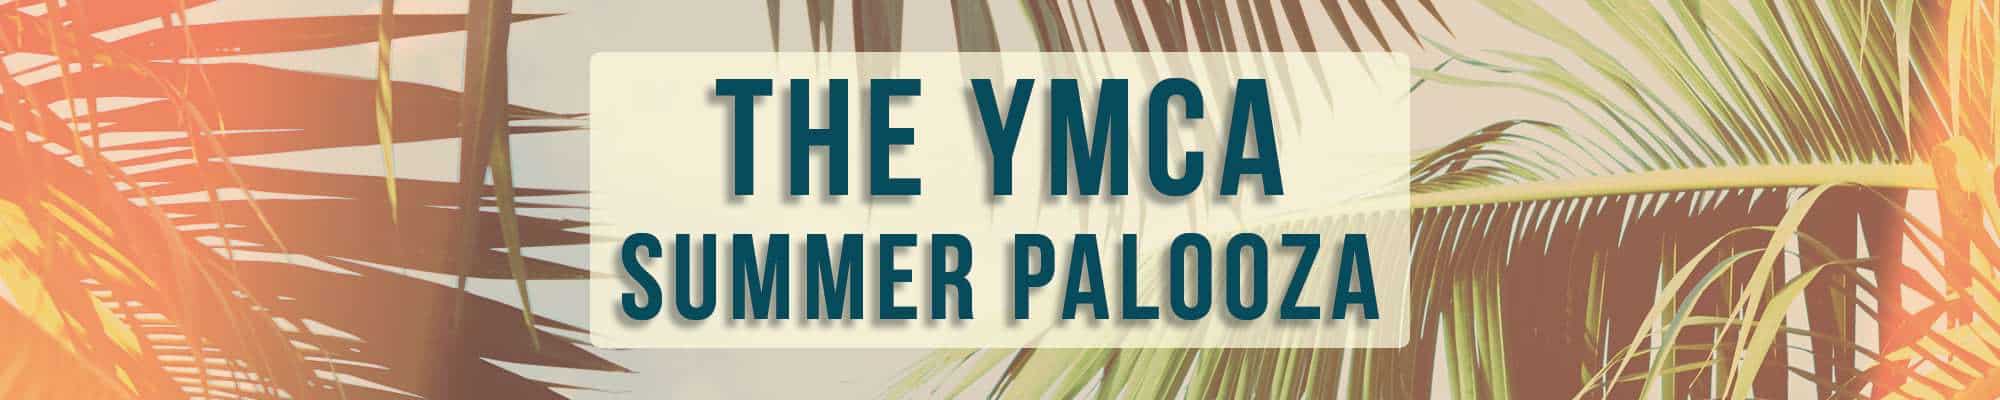 2018-YMCA-Summer-Palooza-Header